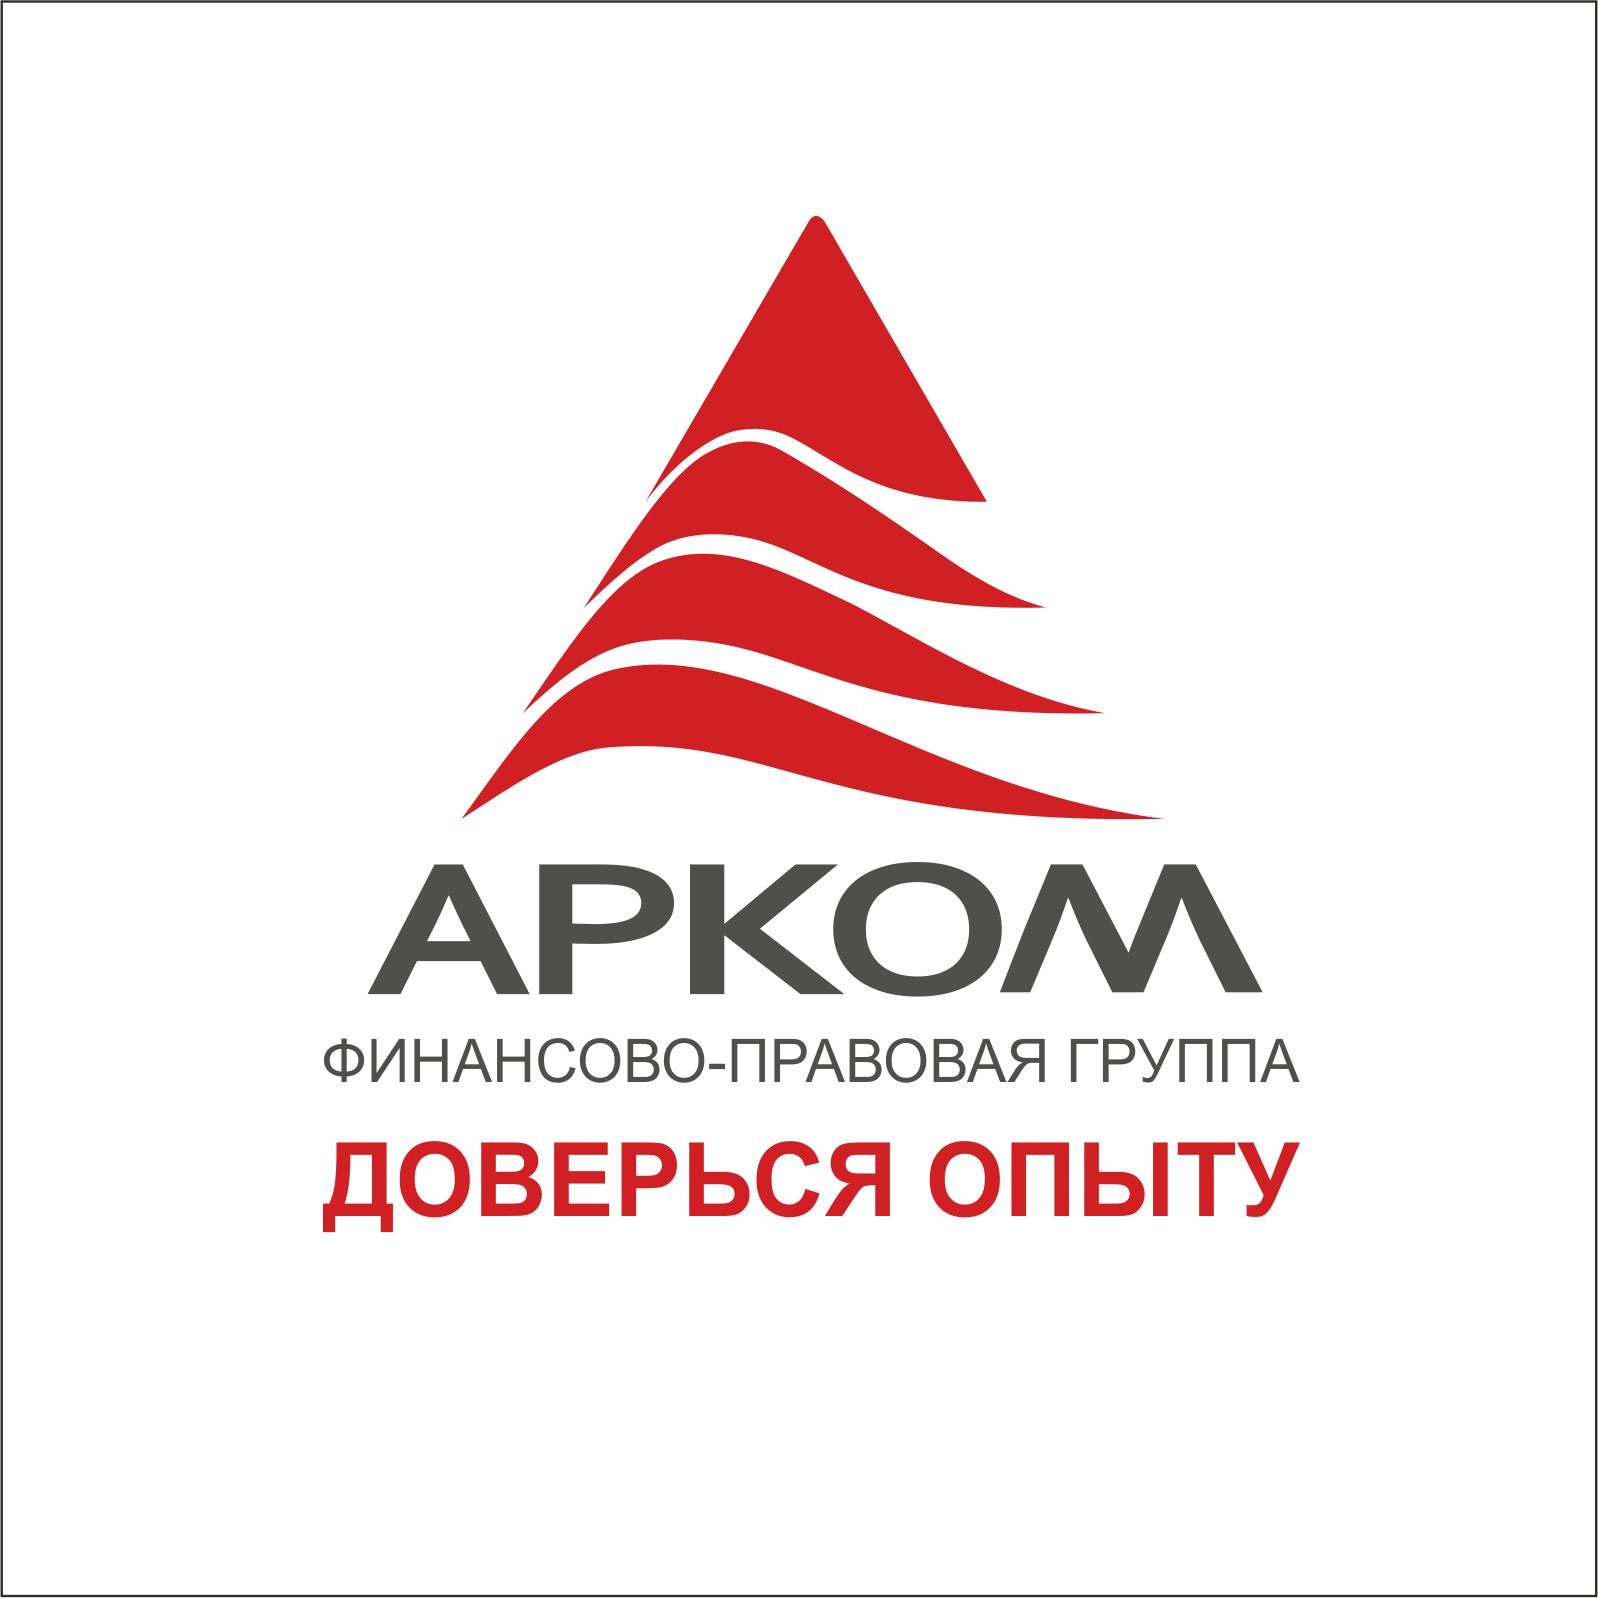 Финансово юридическая группа. АРК логотип. Арком Новосибирск. Финансовая компания. Арком стоматология логотип.